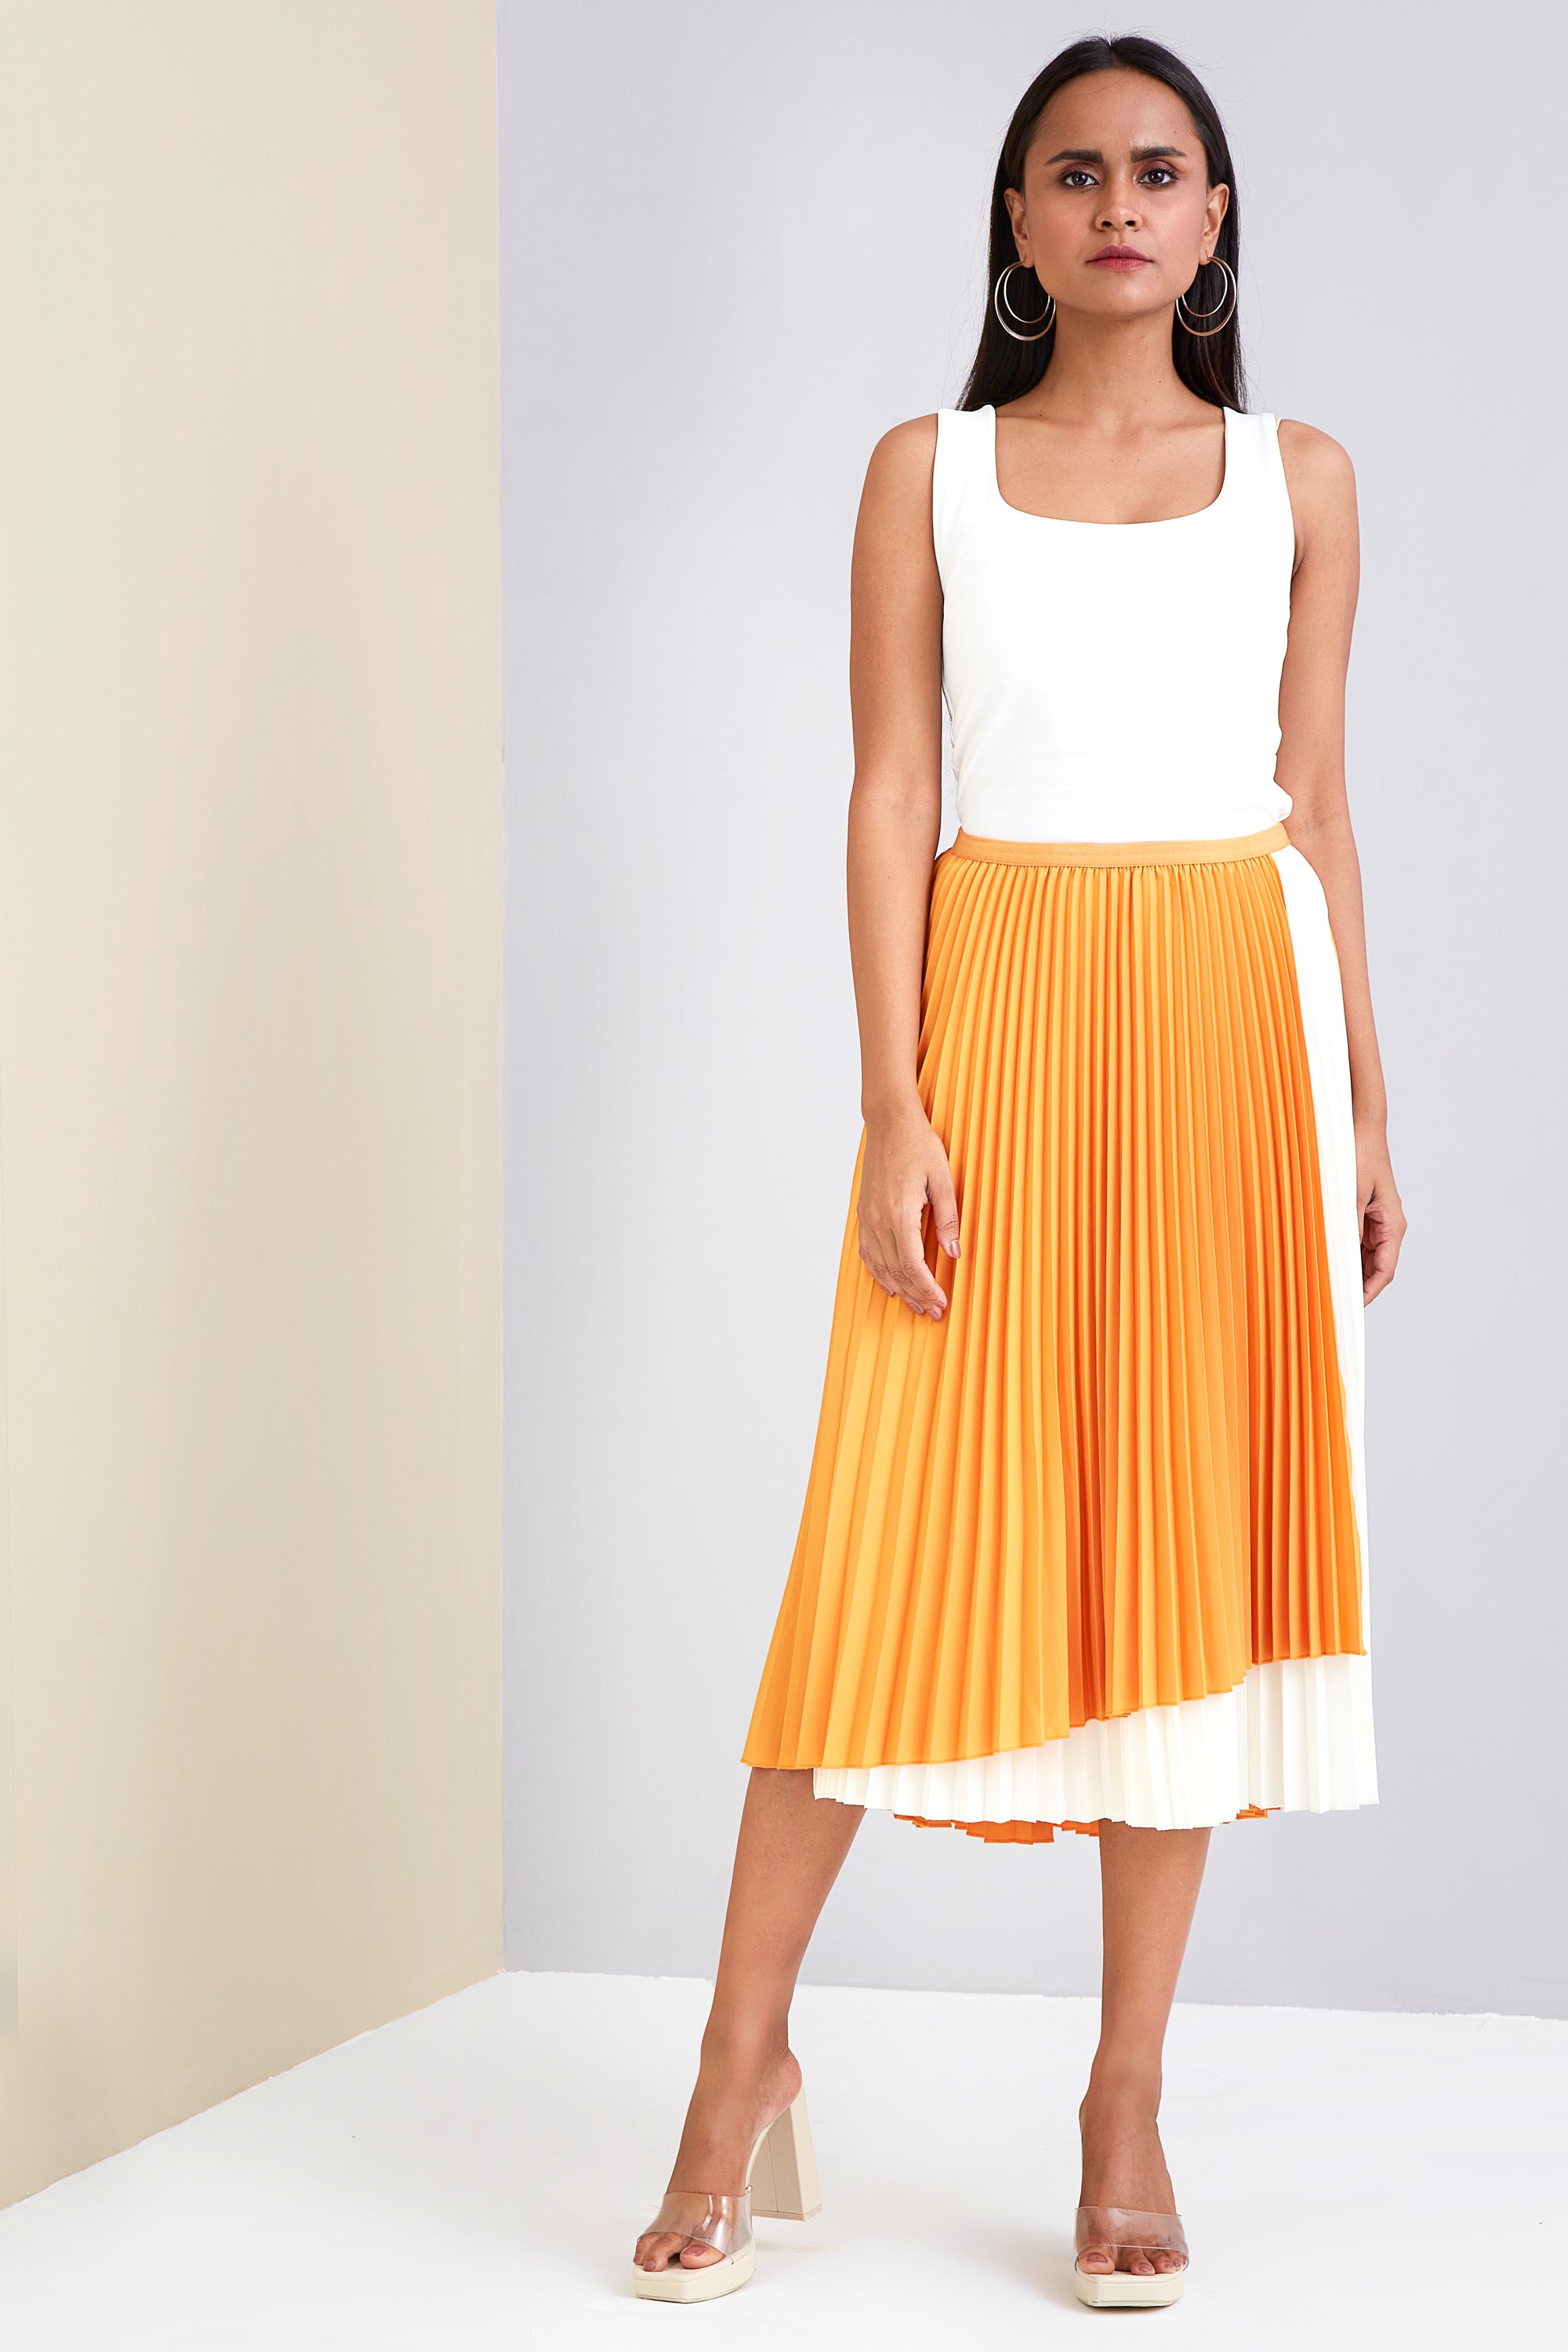 Vienna Skirt -  Saffron Yellow & Off White